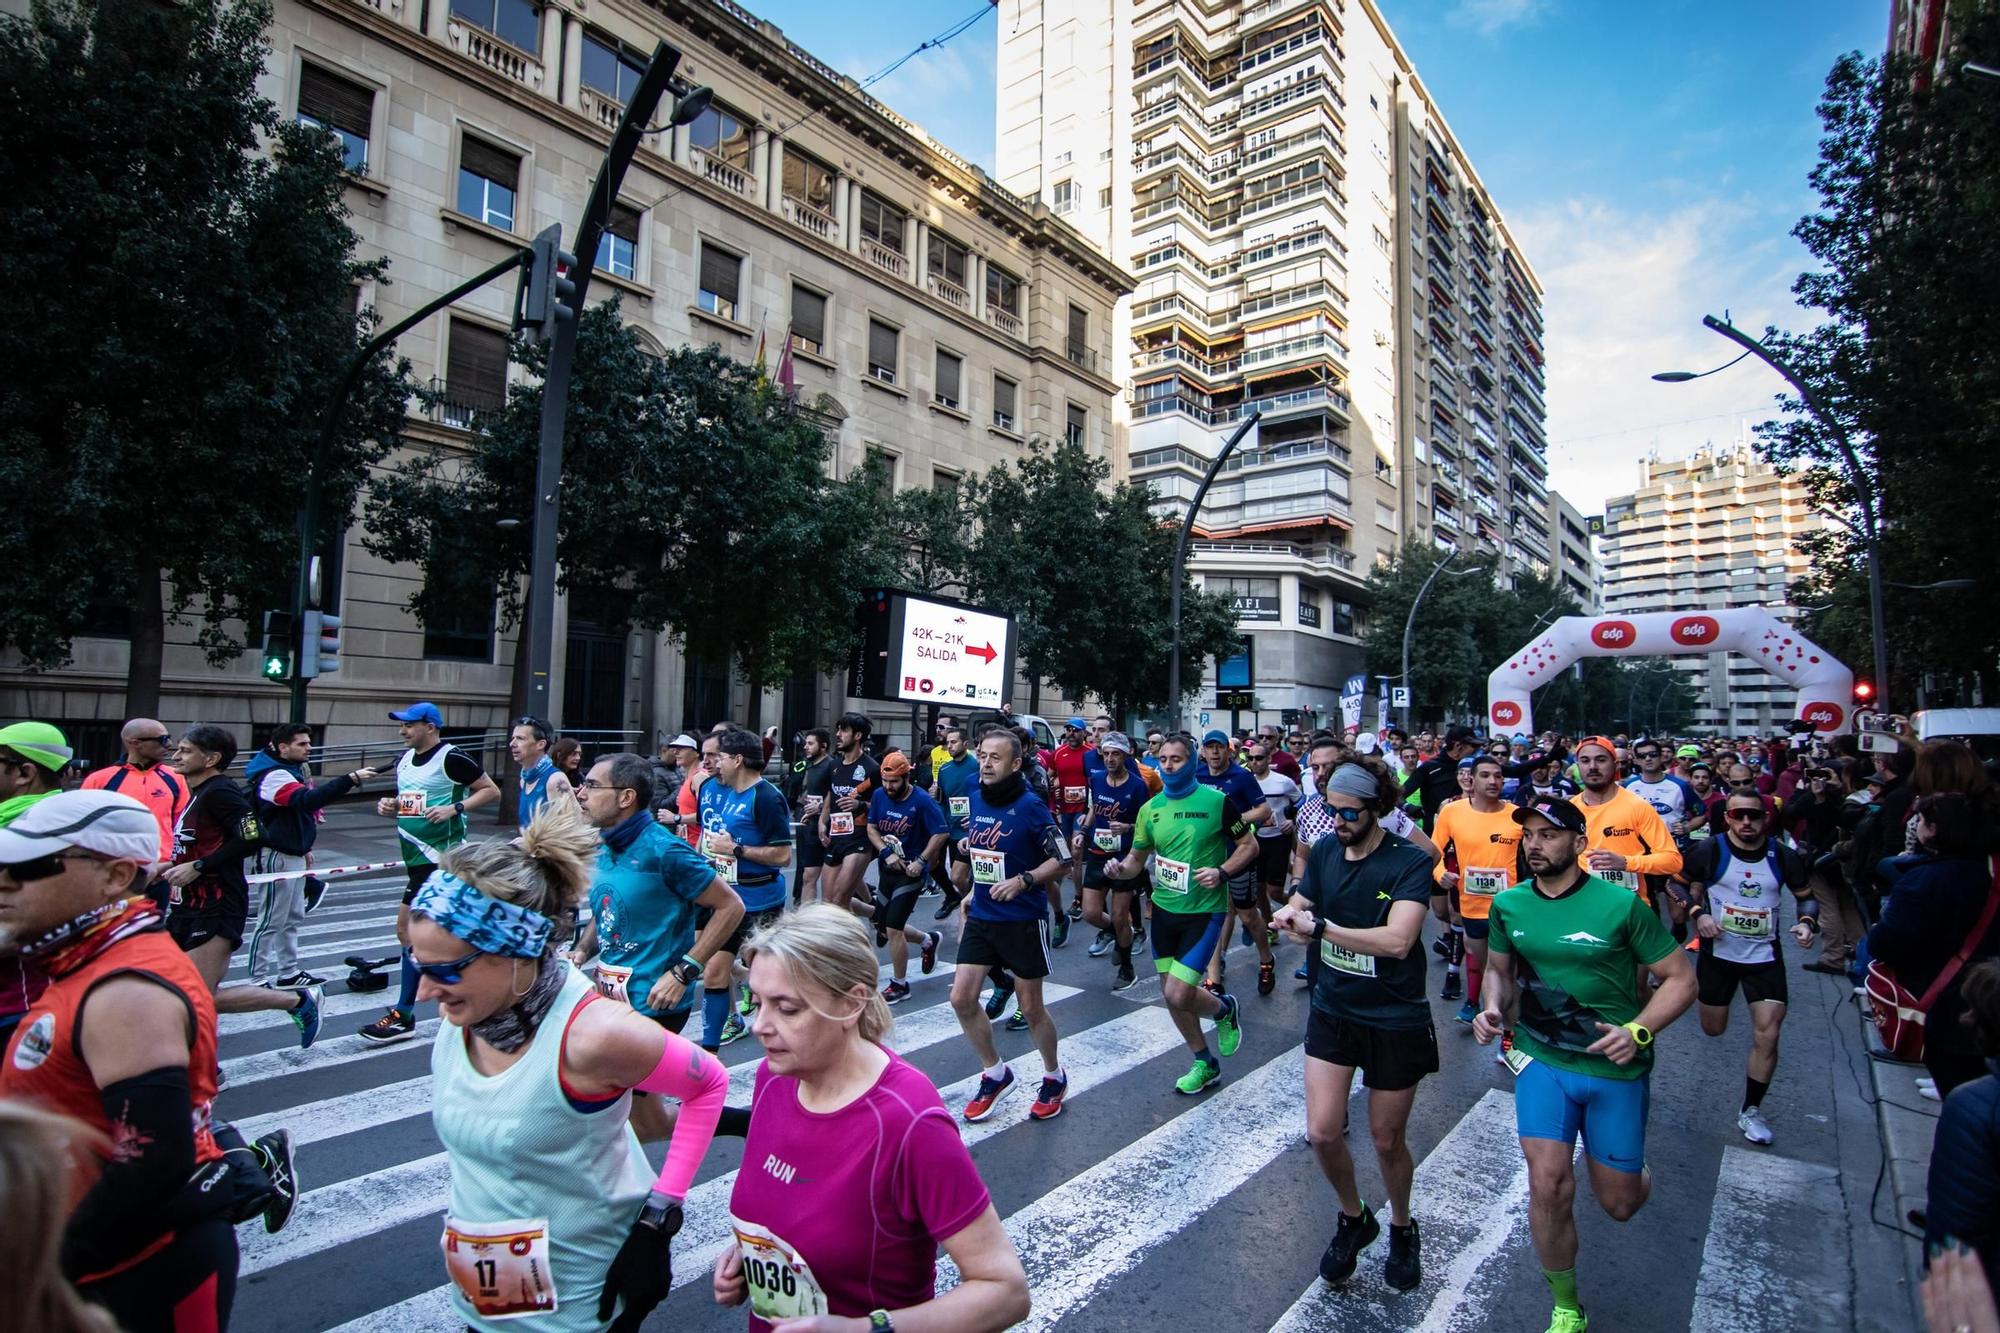 La maratón es la prueba reina del running en la ciudad de Murcia